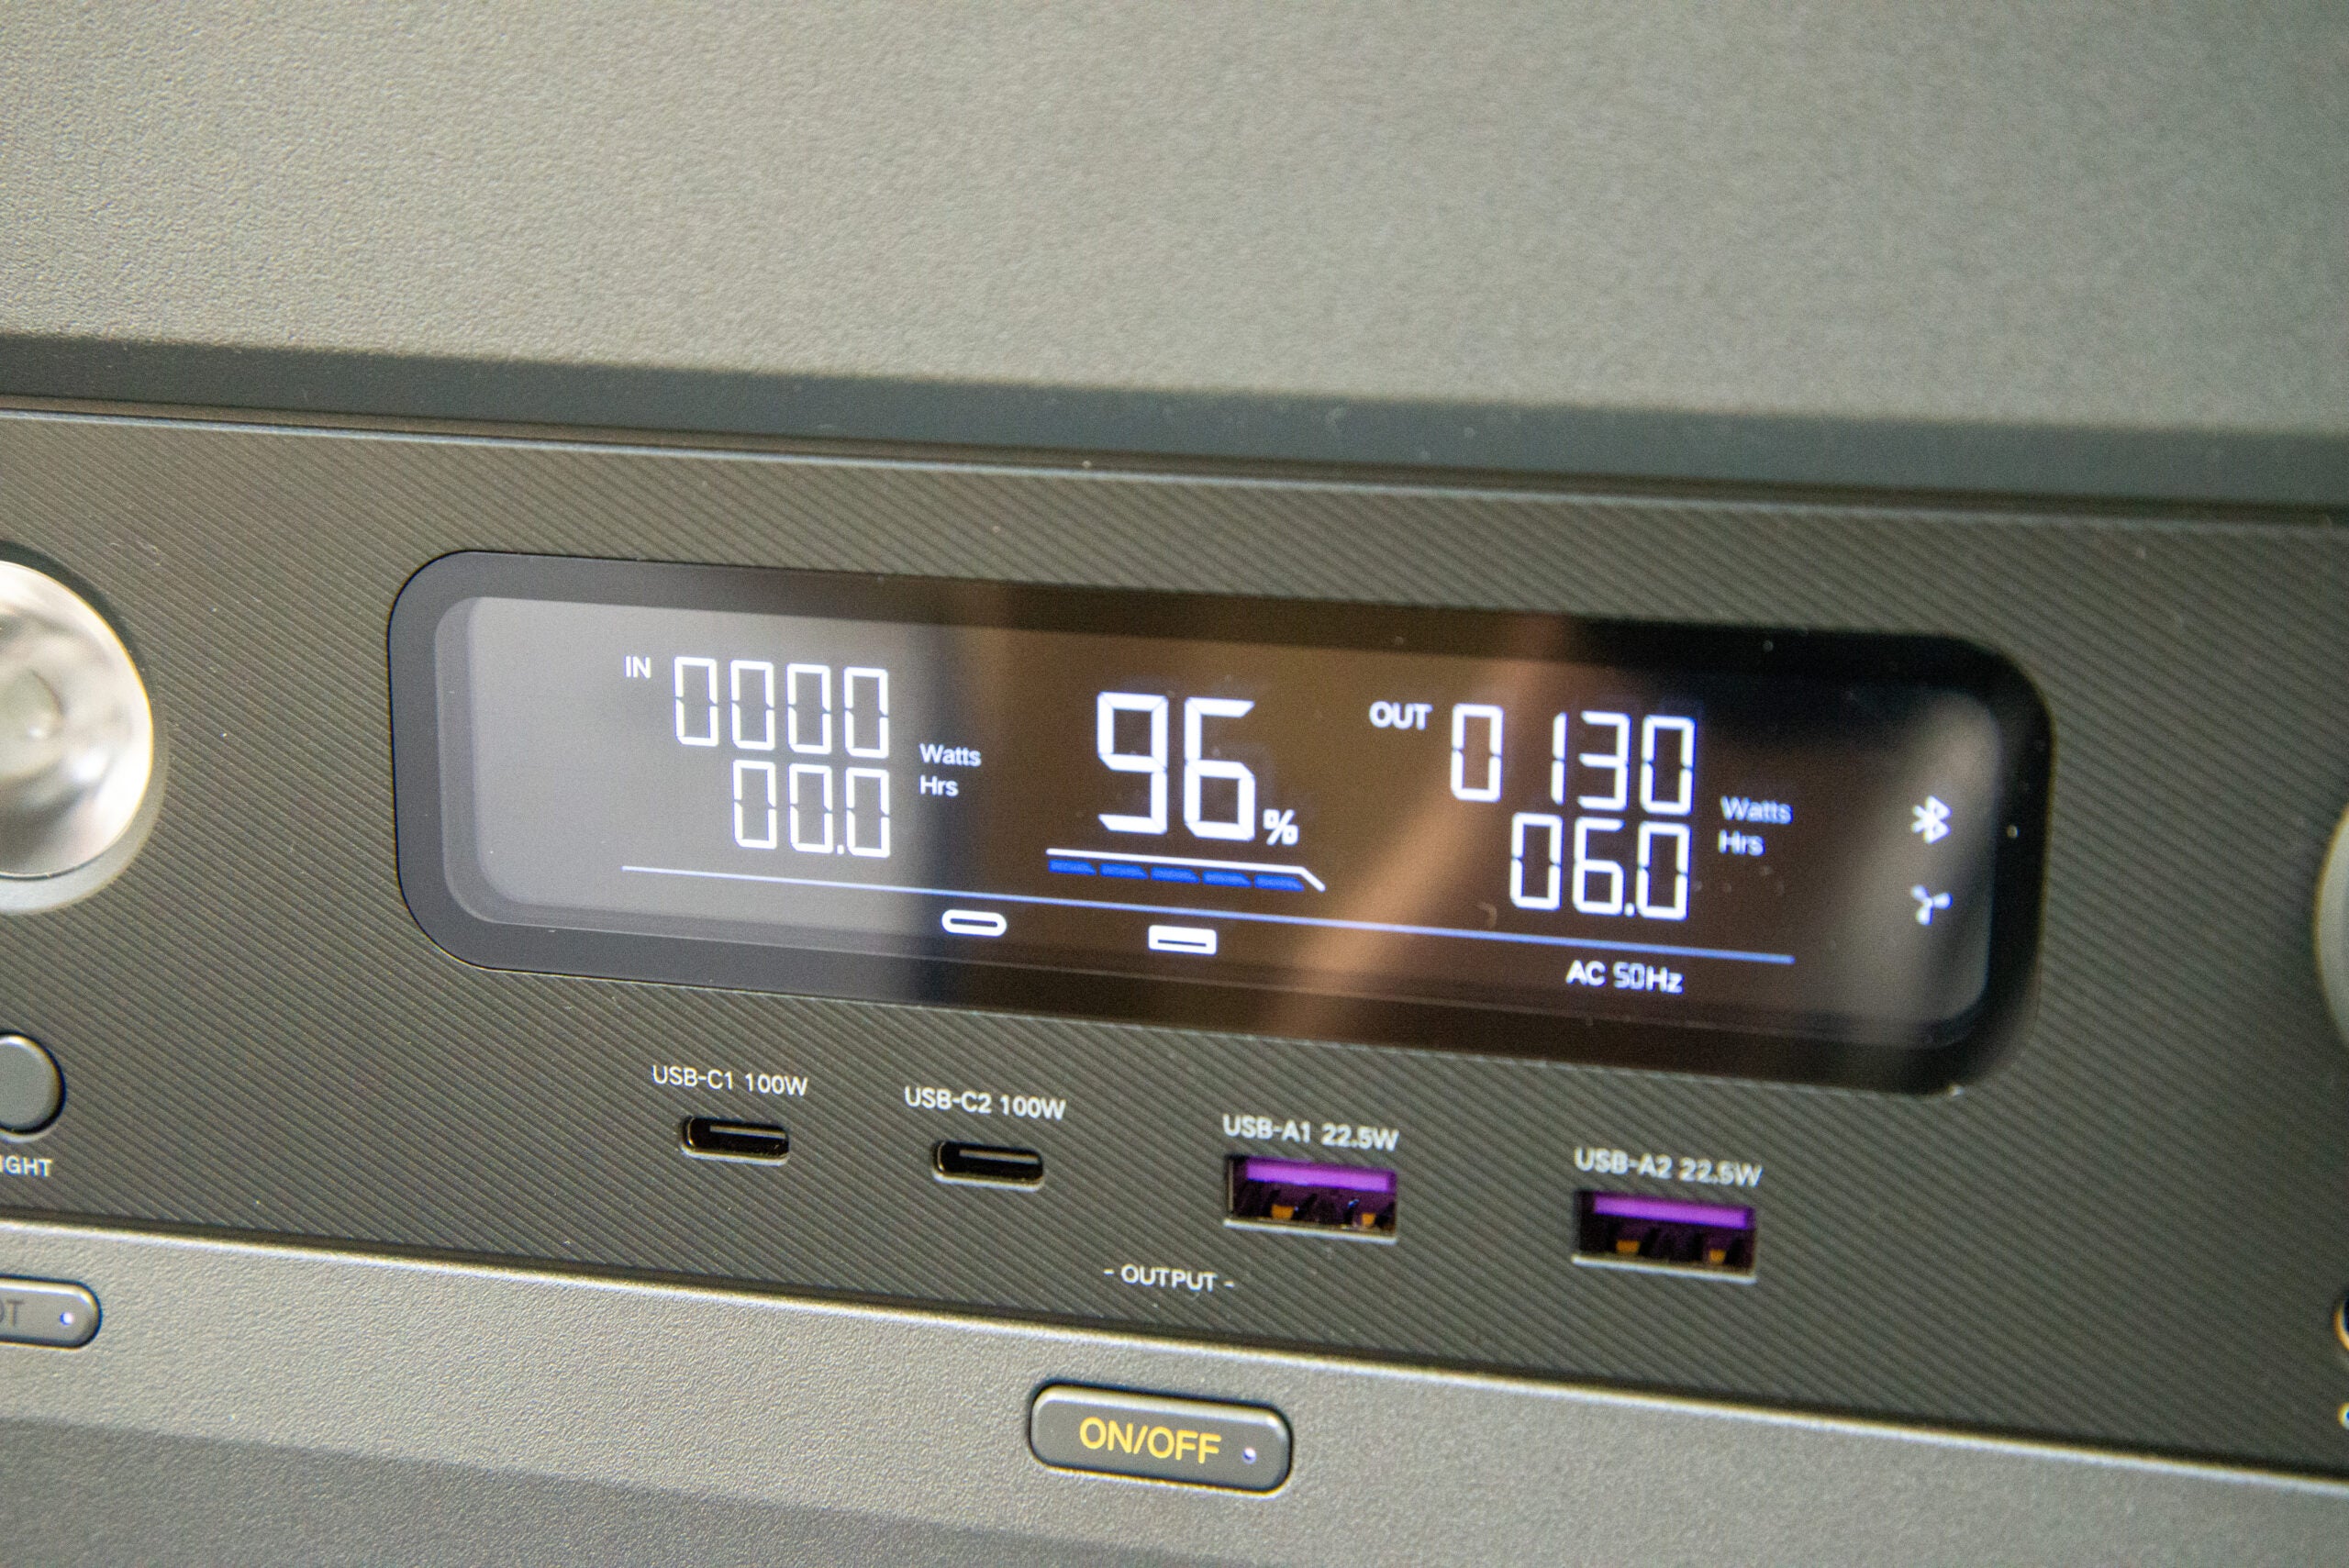 UGreen PowerRoam GS1200 LCD